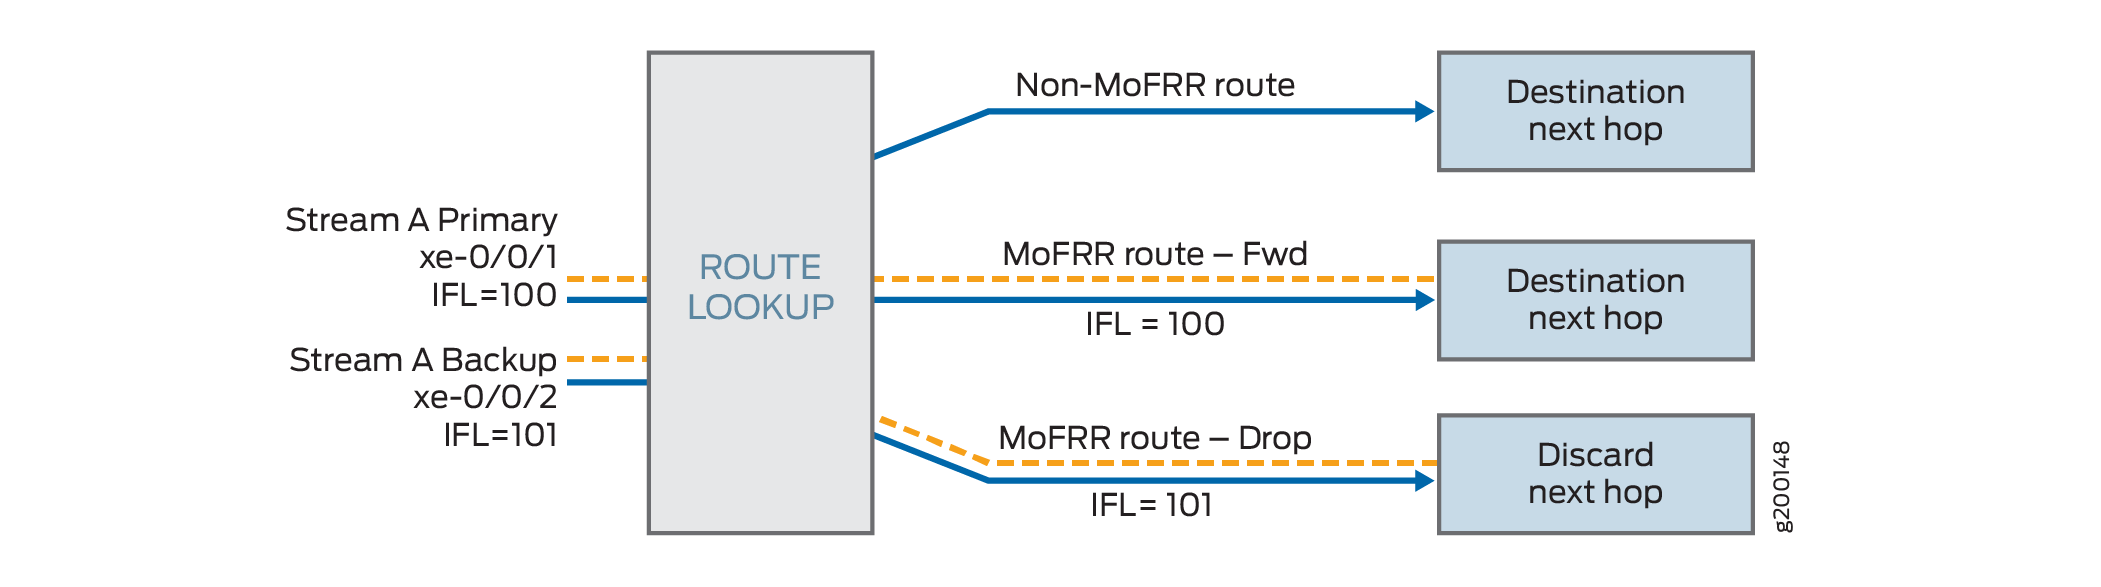 交换机上数据包转发引擎中的 MoFRR IP 路由处理